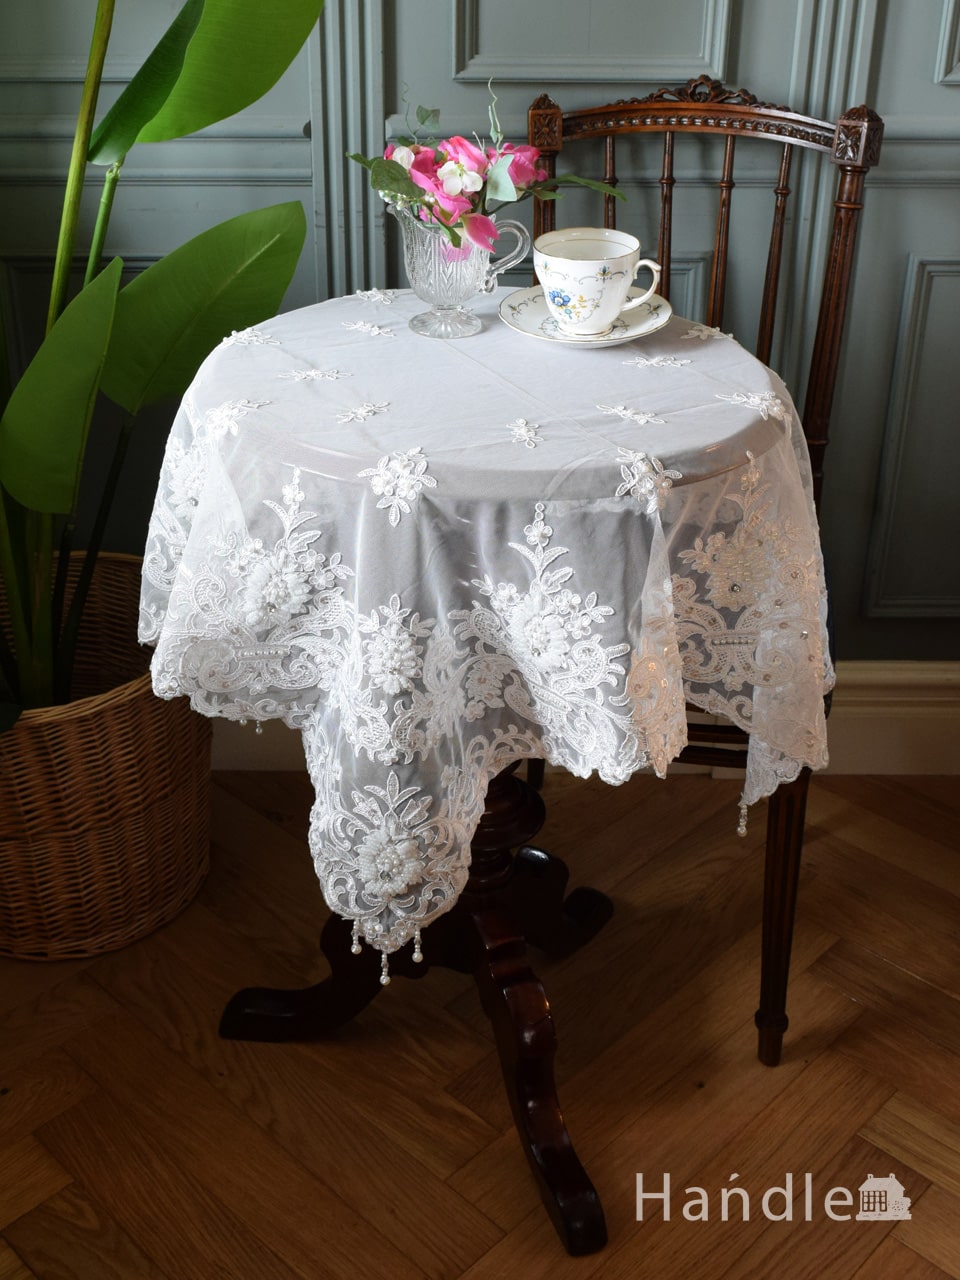 フレンチアンティーク調のテーブルクロス、華やかな刺繍のレース85×85 (n20-131)